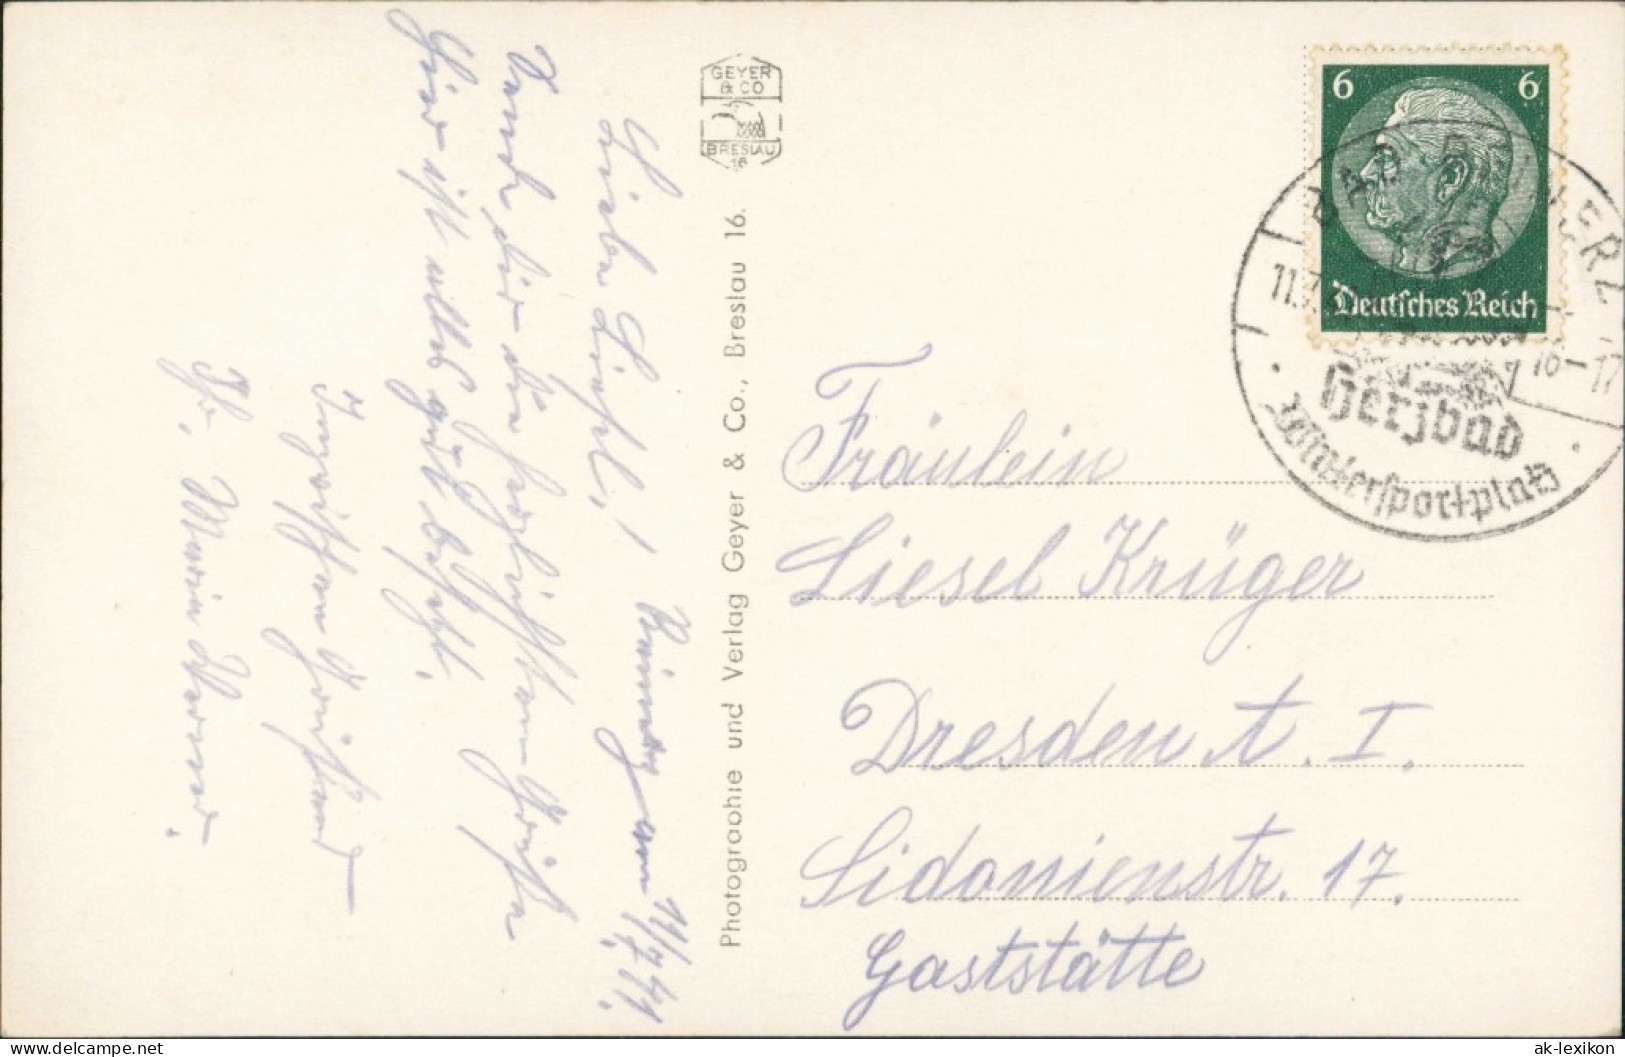 Postcard Bad Reinerz Duszniki-Zdrój Stadtpartie 1932 - Schlesien